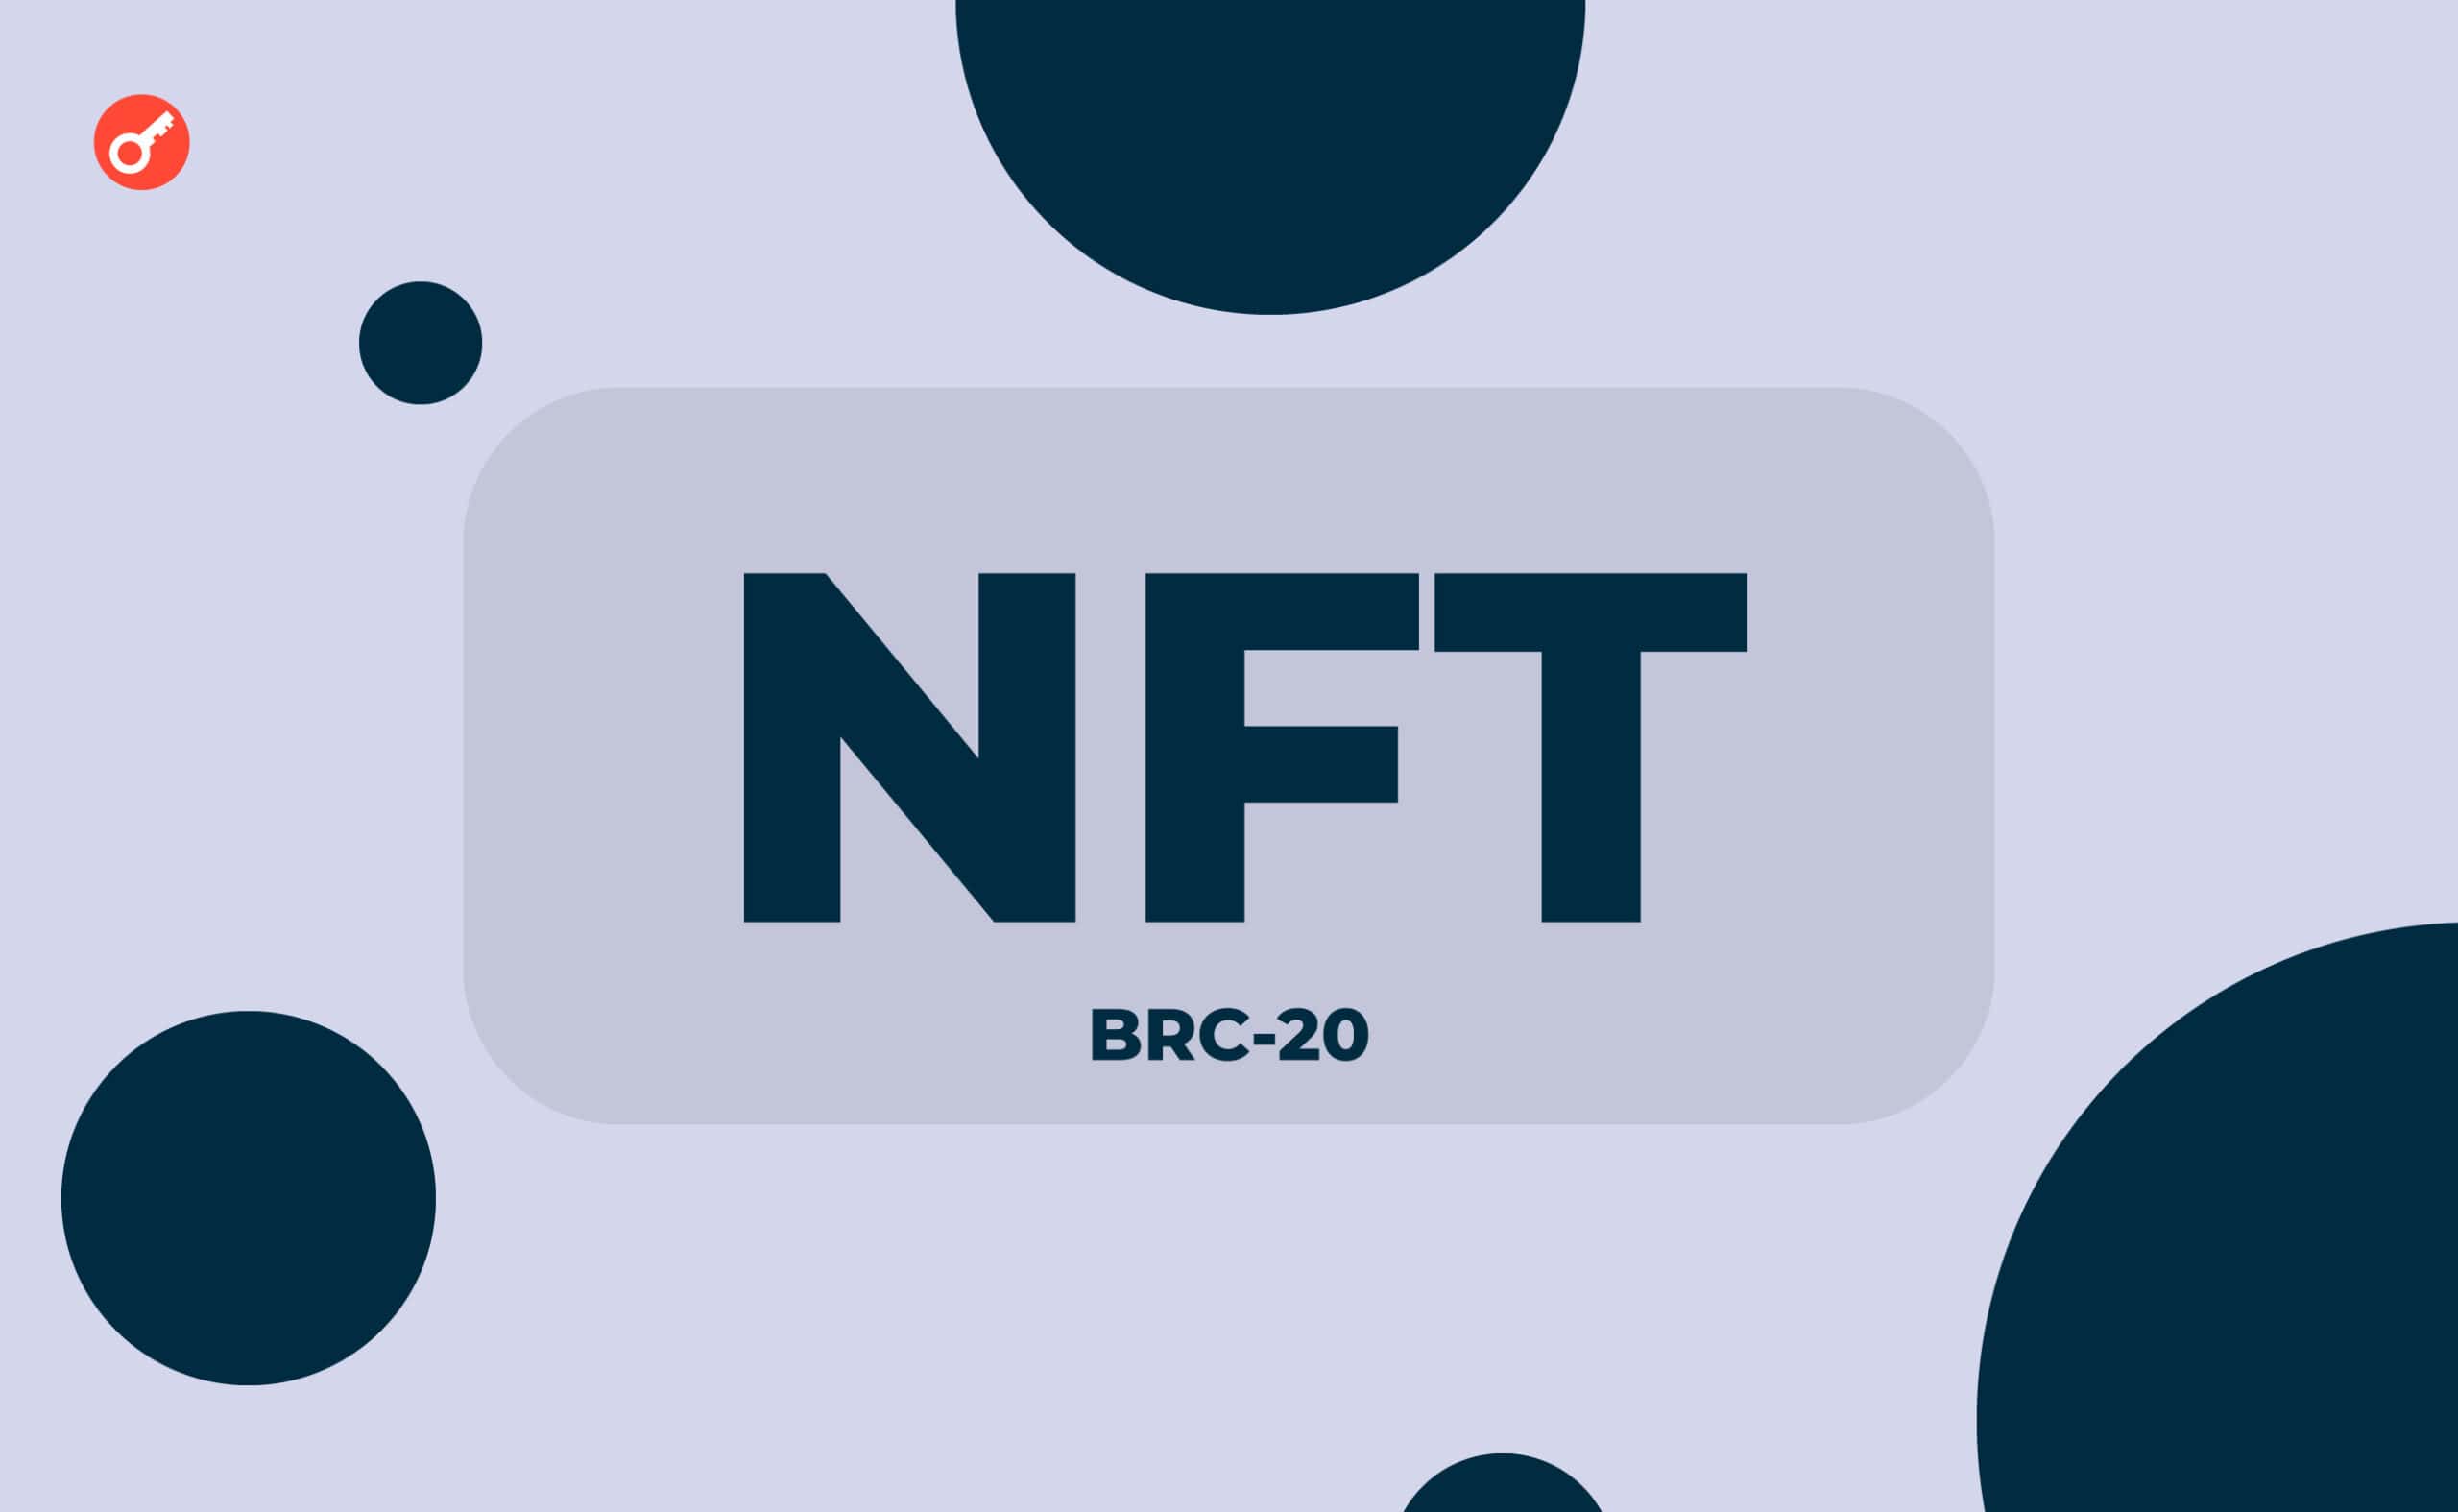 Количество NFT Ordinals превысило 1 млн после выхода «BRC-20». Заглавный коллаж новости.